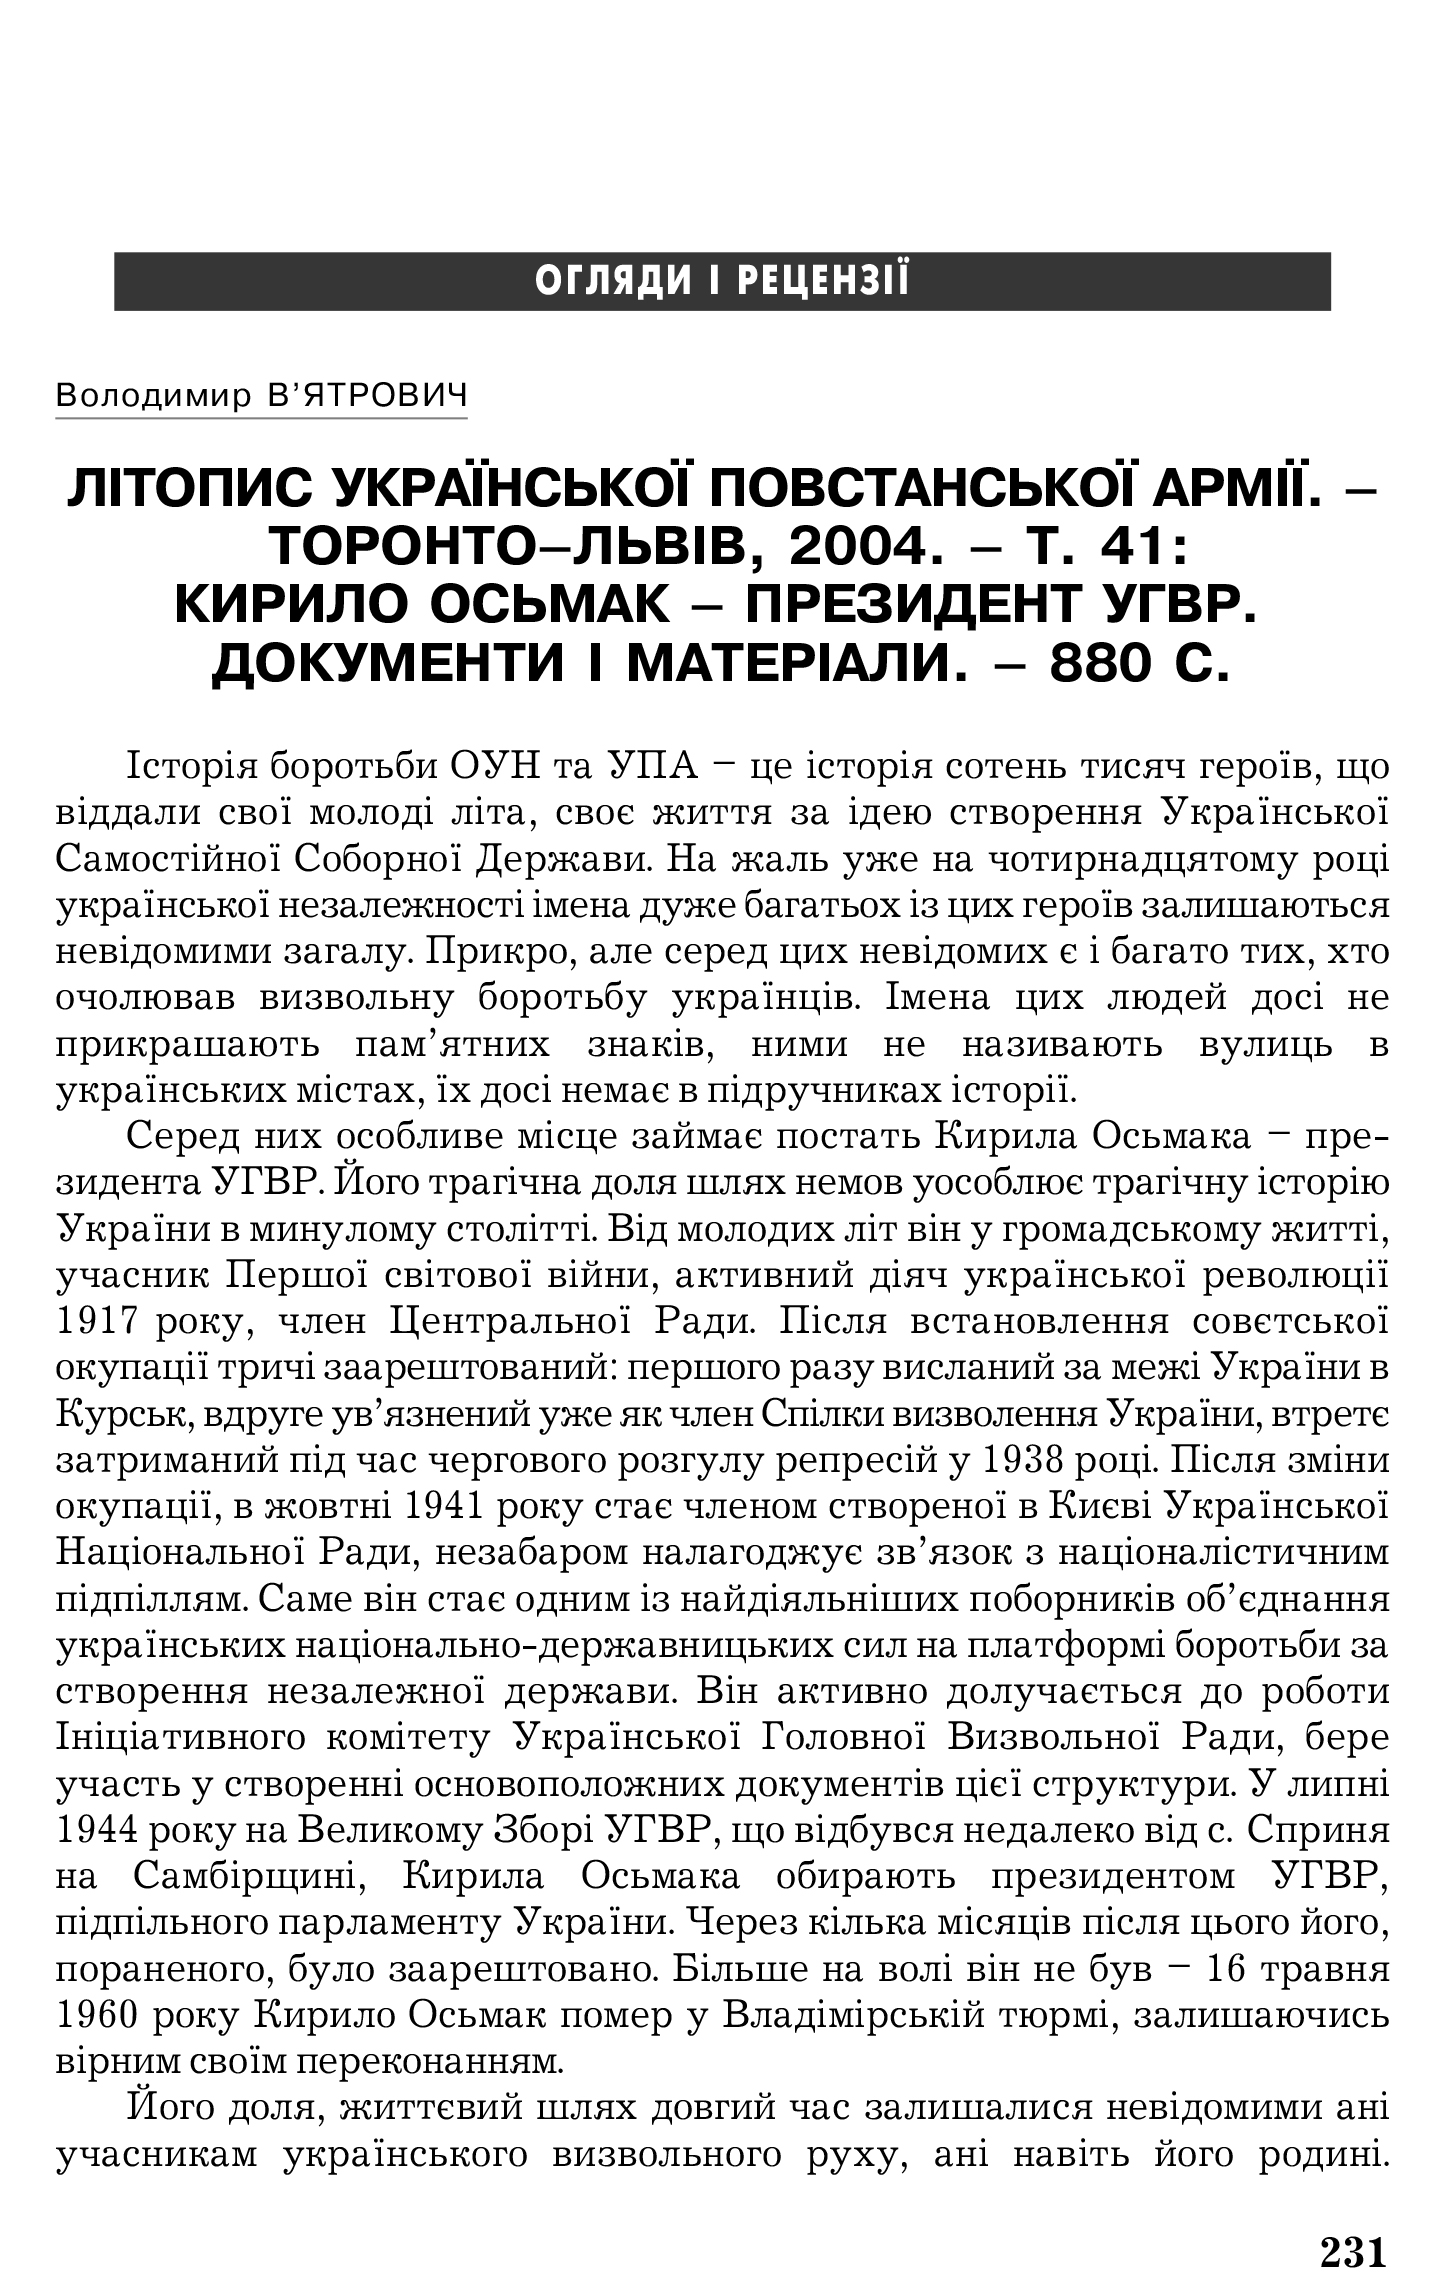 Український визвольний рух №5, ст. 231 - 232